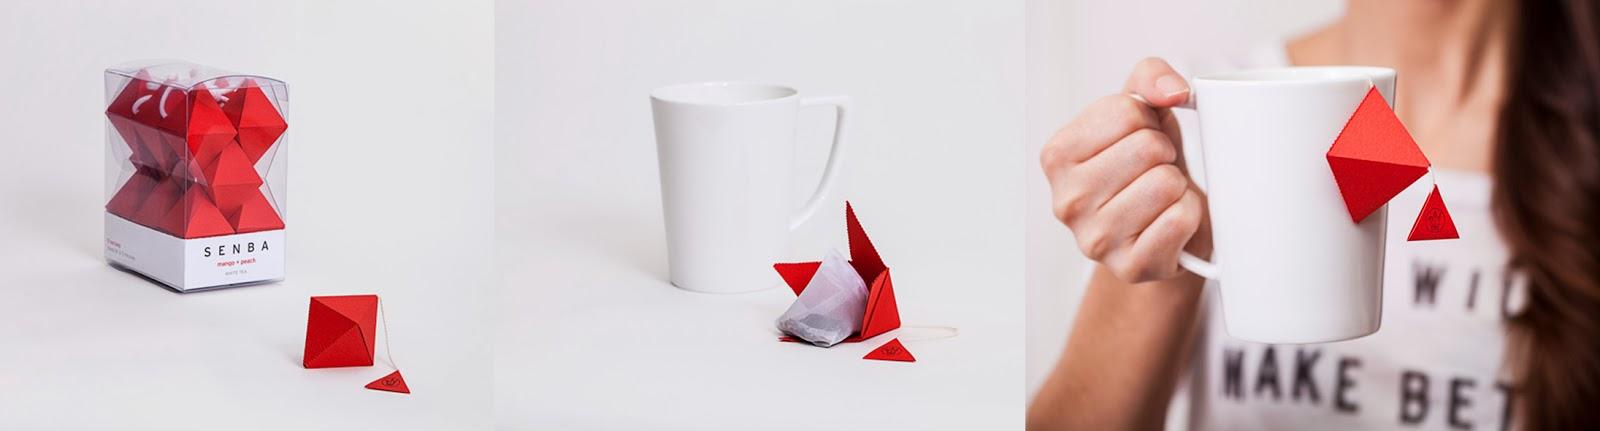 Sentimientos y diseño en bolsitas de té